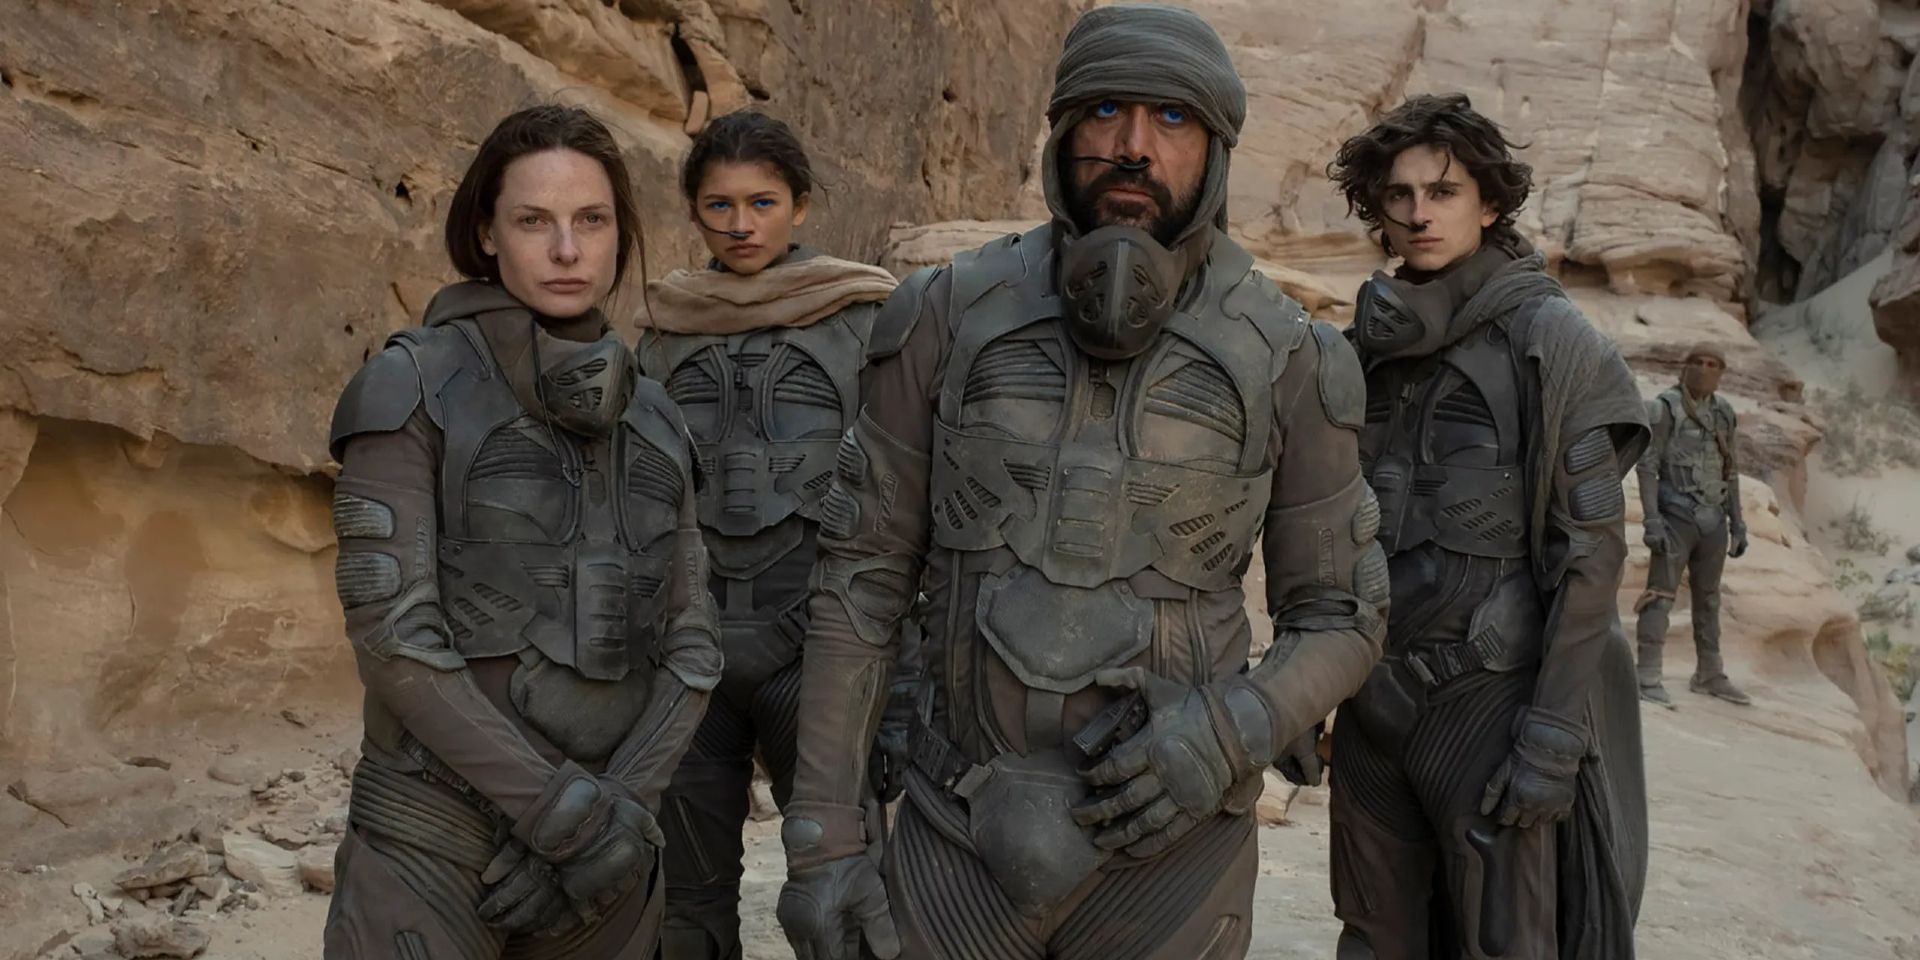 Jessica, Paul, Chani, & Stilgar stand in the desert in Dune.